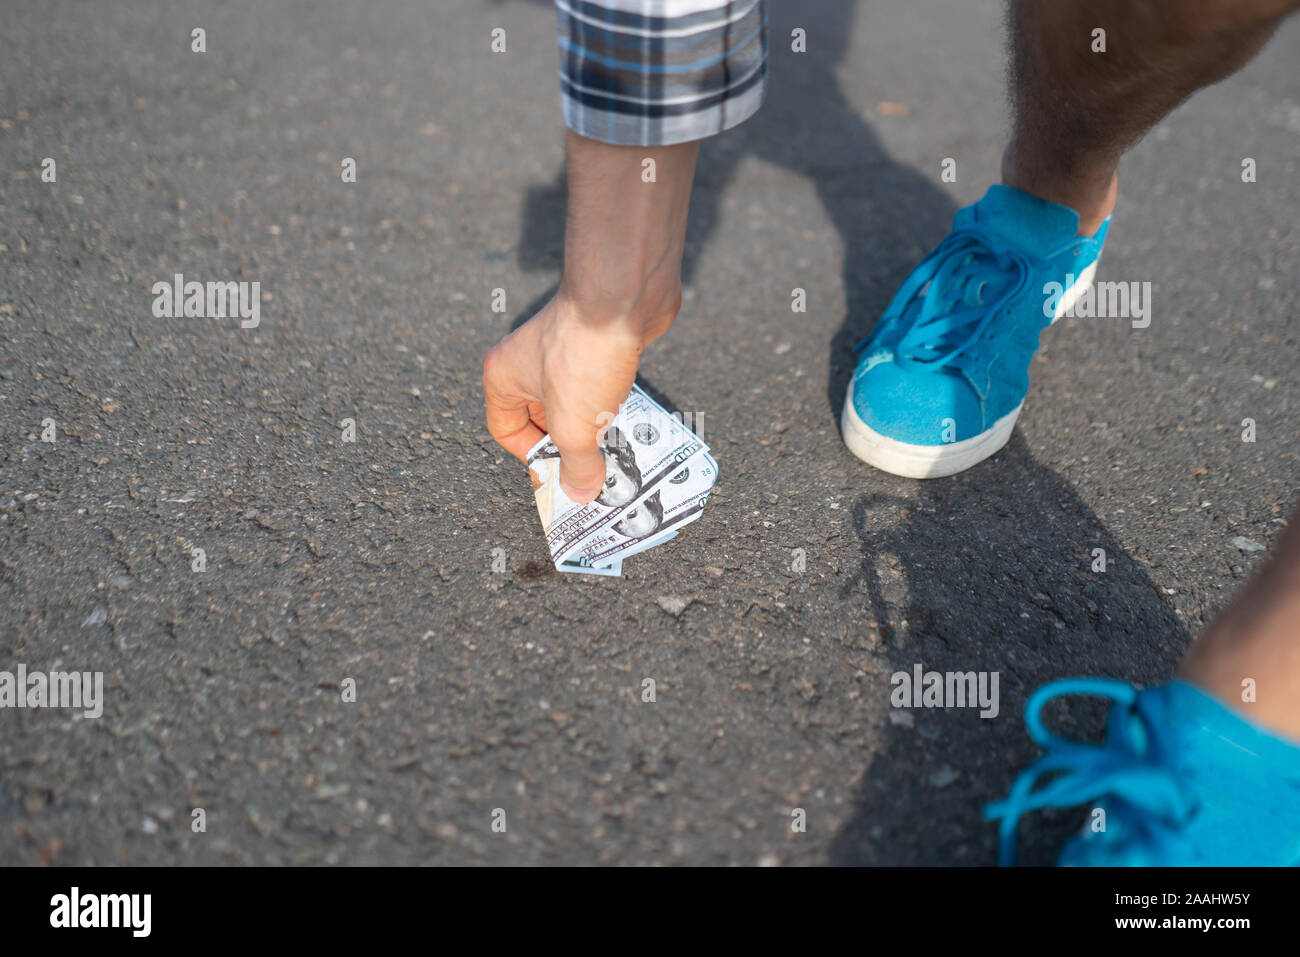 Persona trova la carta moneta perduta e lasciato cadere sul terreno asfaltato all'aperto Foto Stock